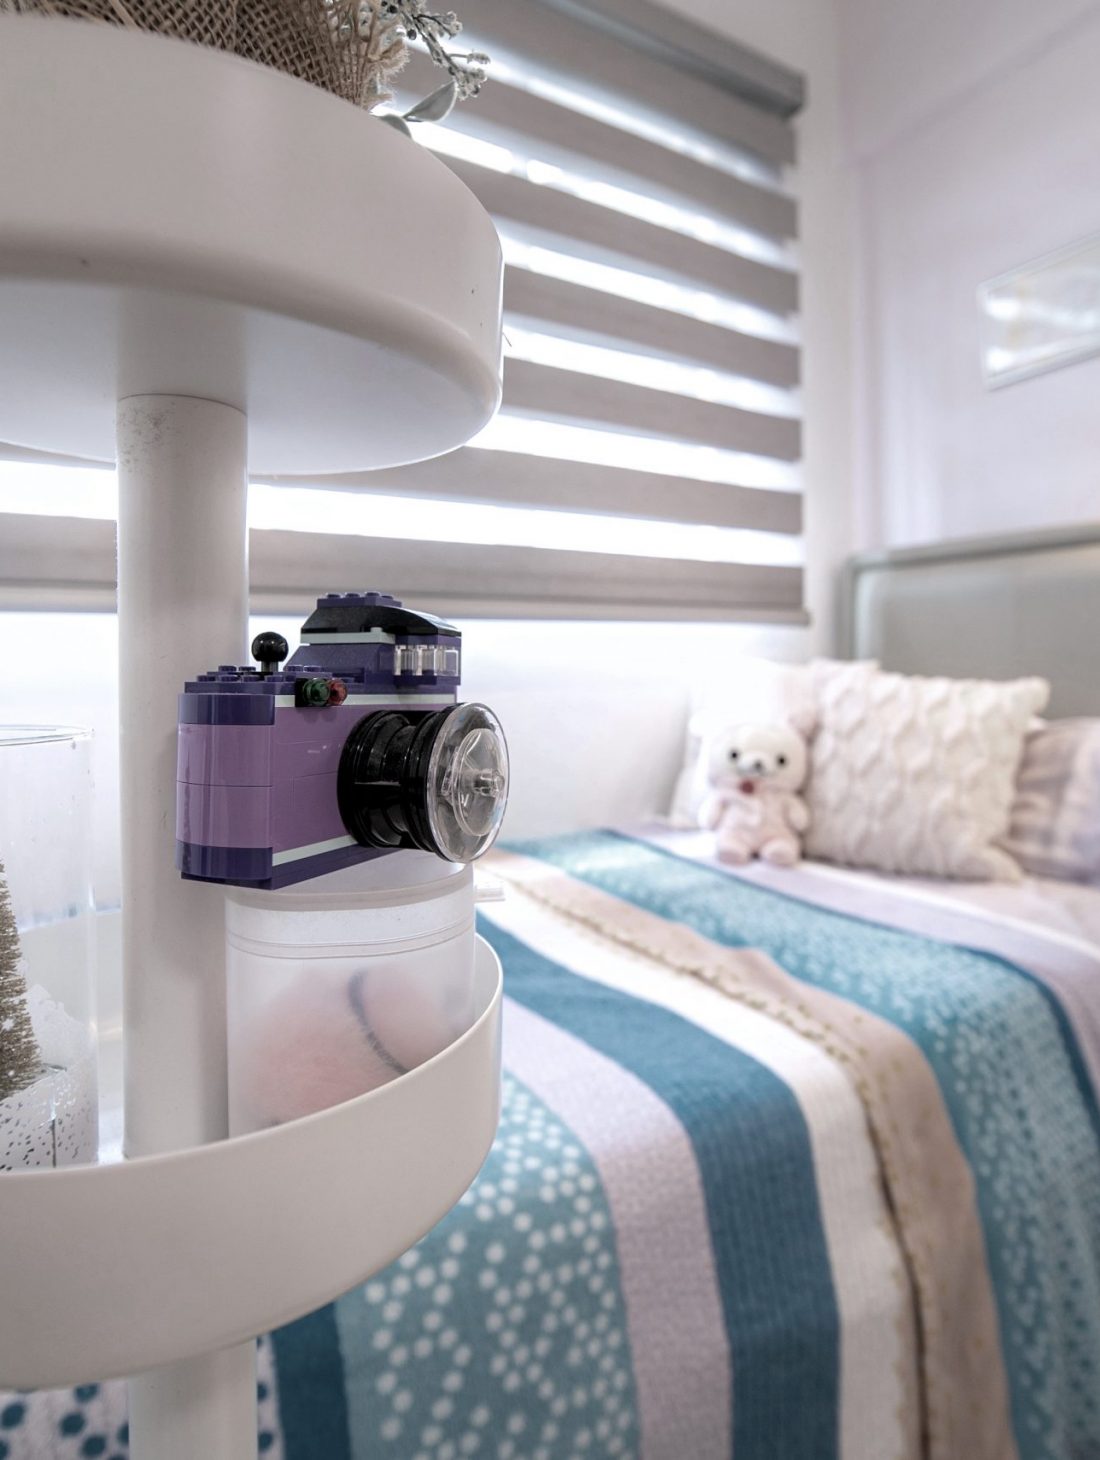 Bishan St 13 HDB resale girl kids bedroom in purple